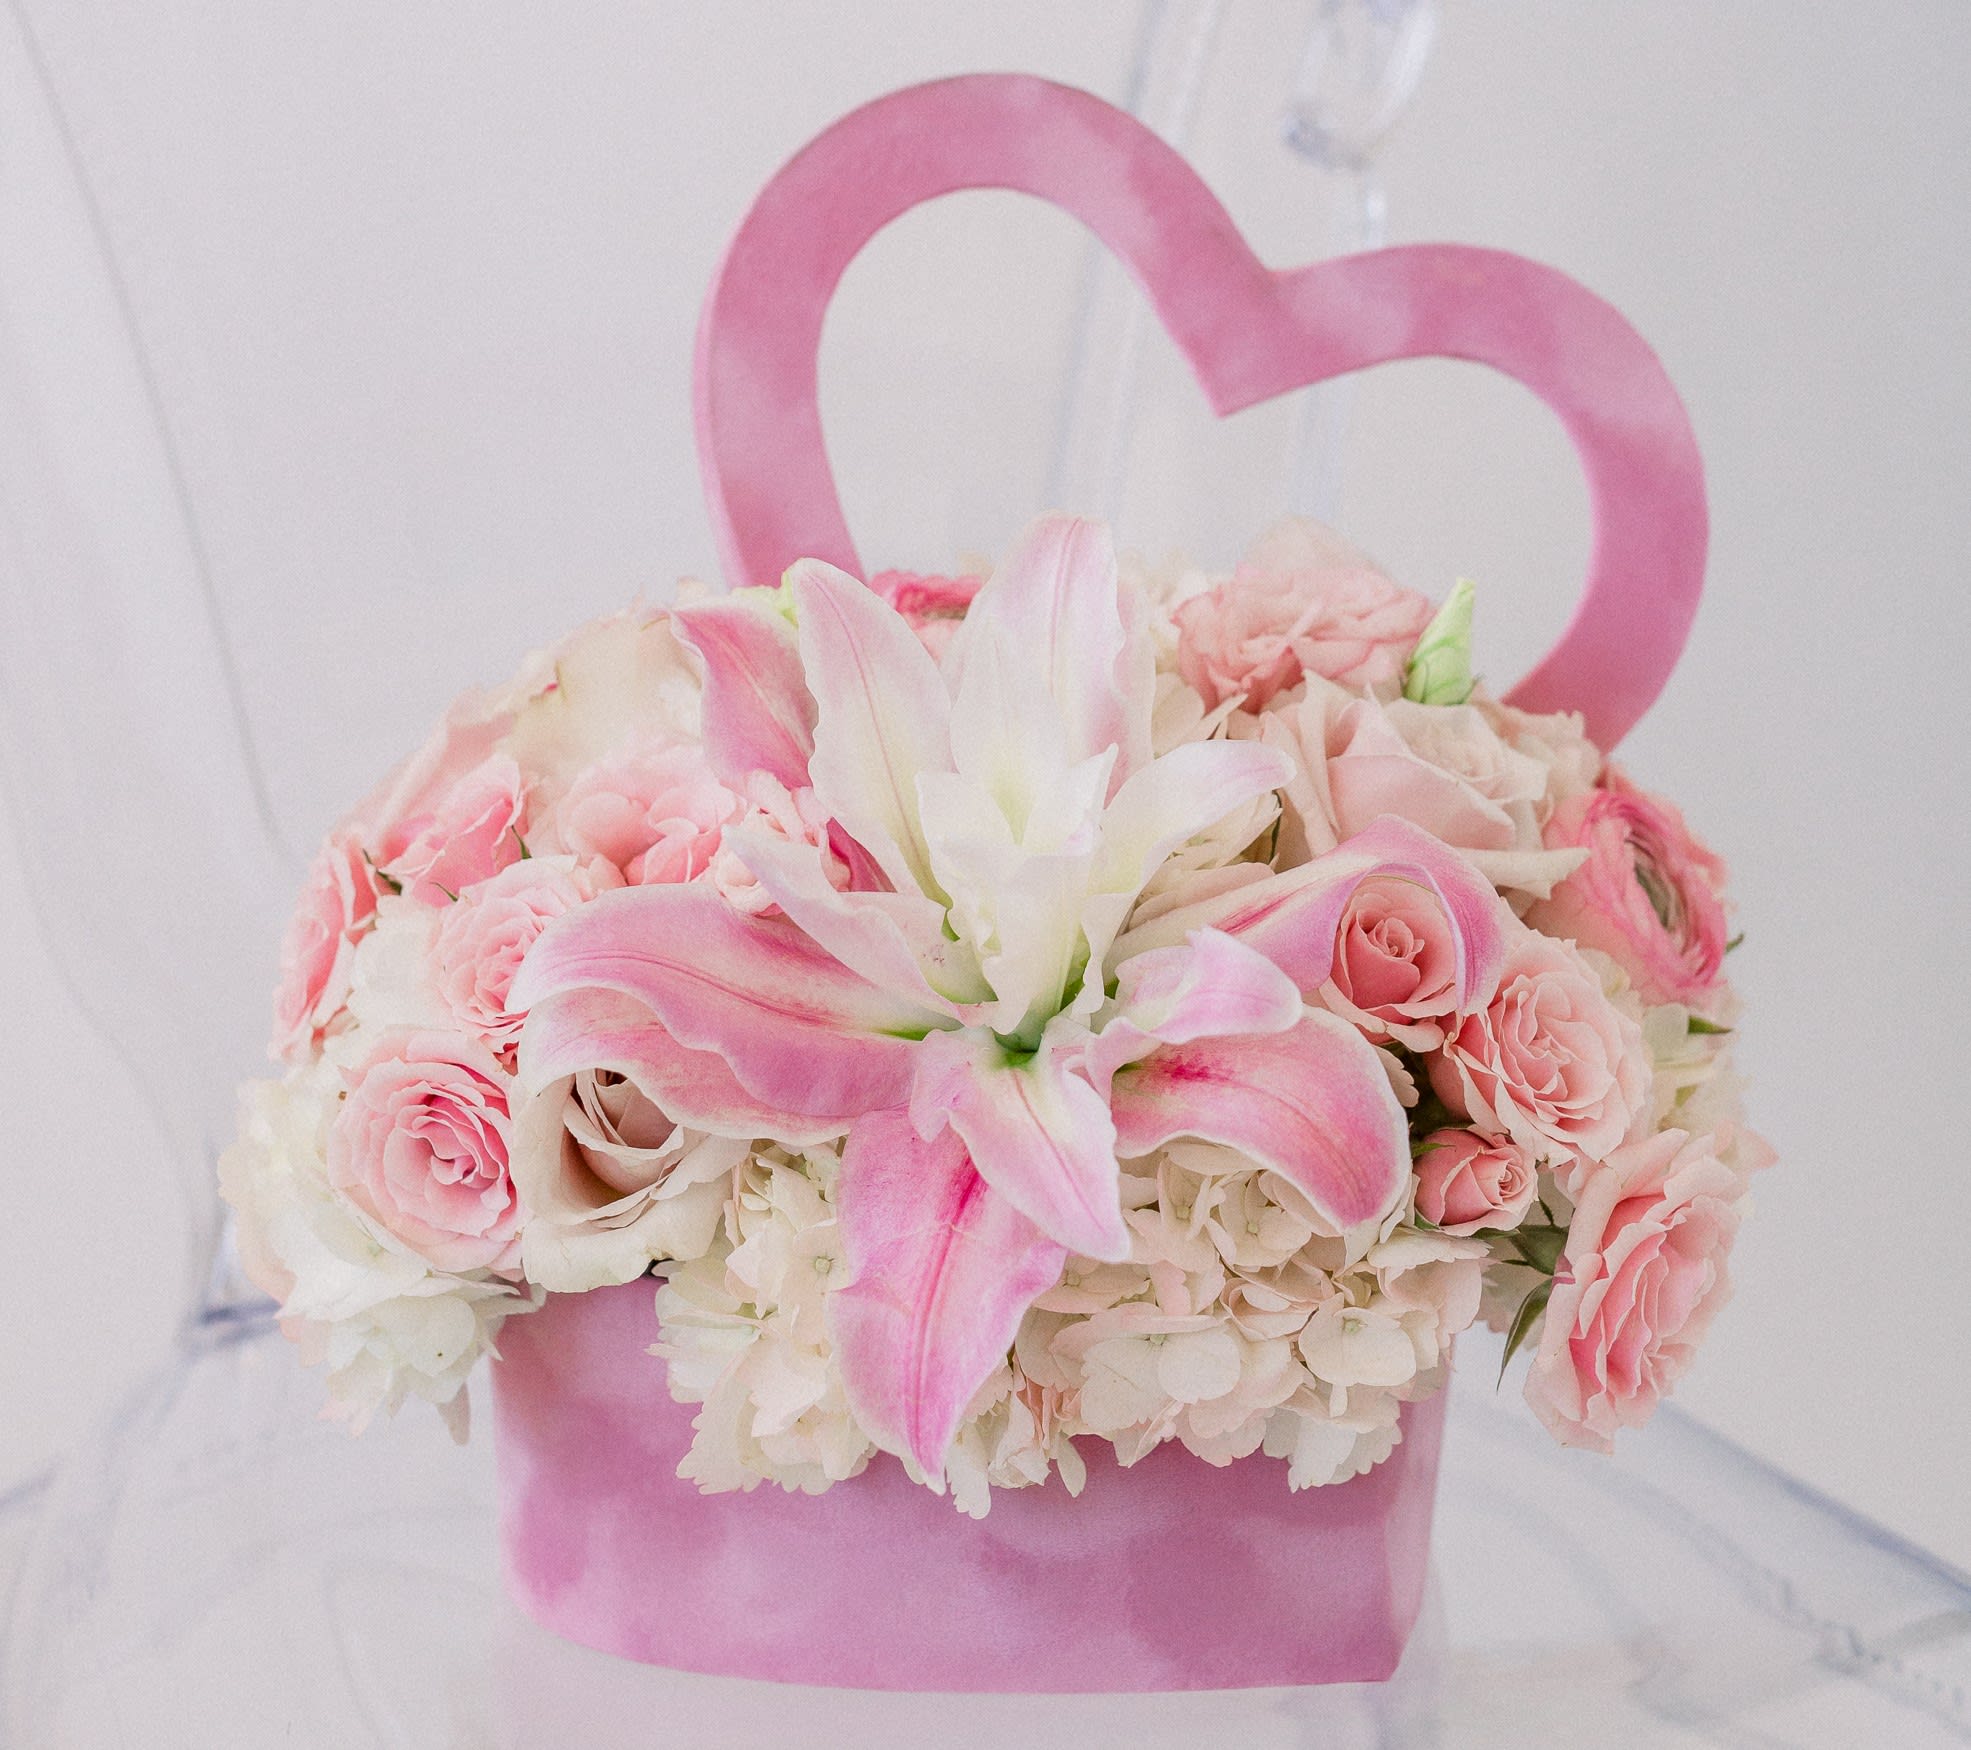 Velvet Heart Box - Our beautiful velvet heart box filled with premium blooms. 